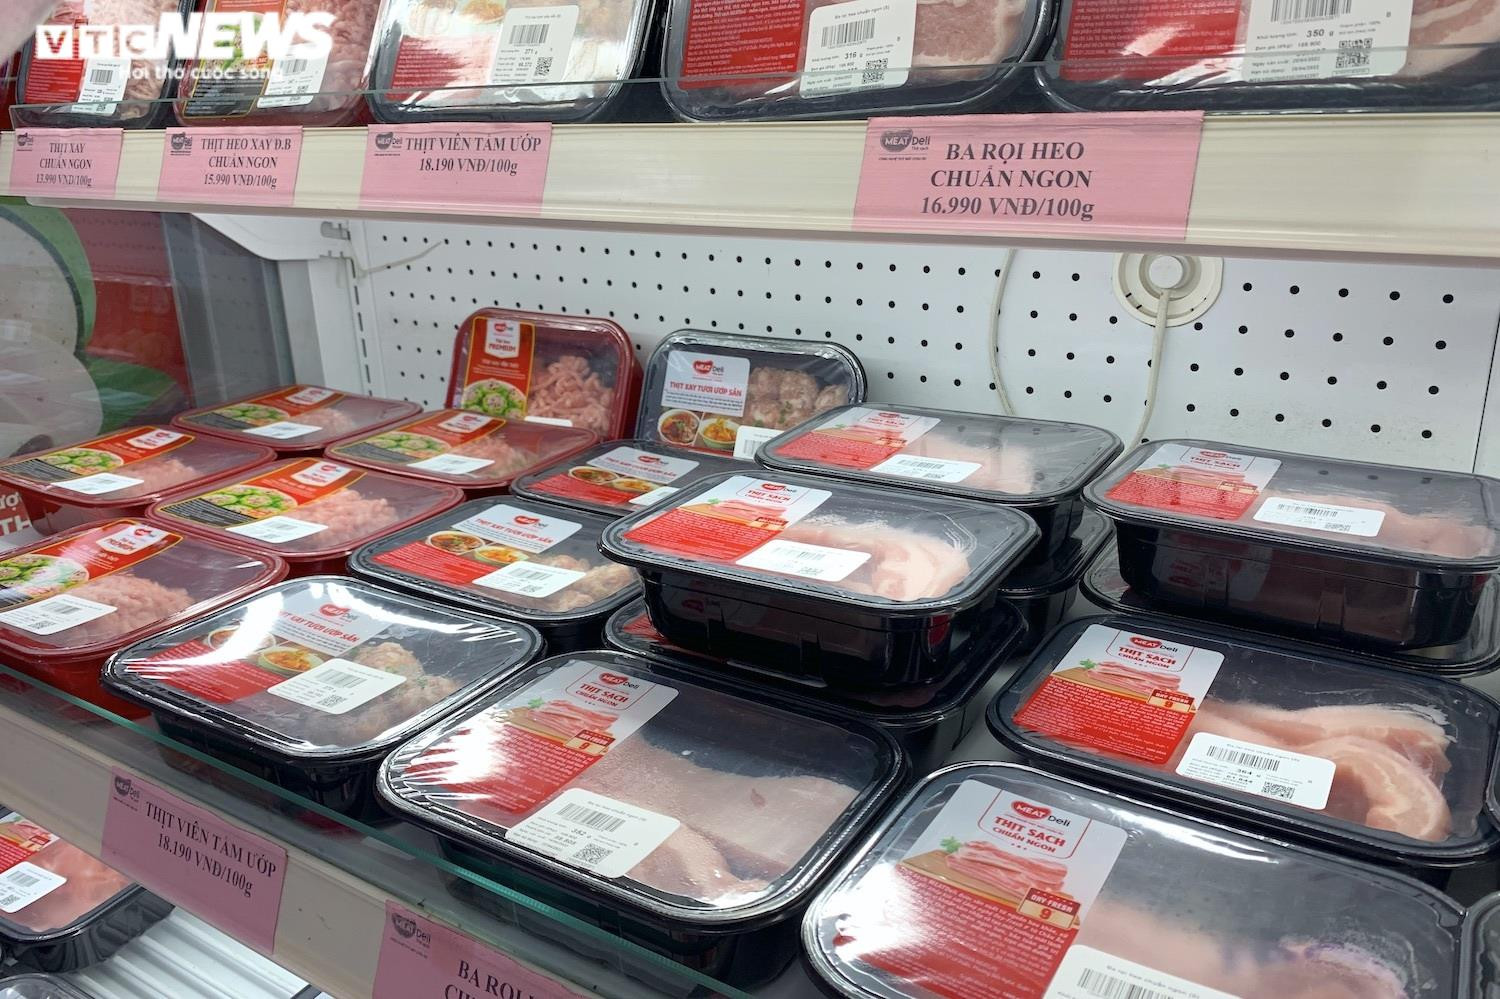 Giá thịt heo ở chợ bật tăng: Tuyệt chiêu che mắt khách của người bán - 2